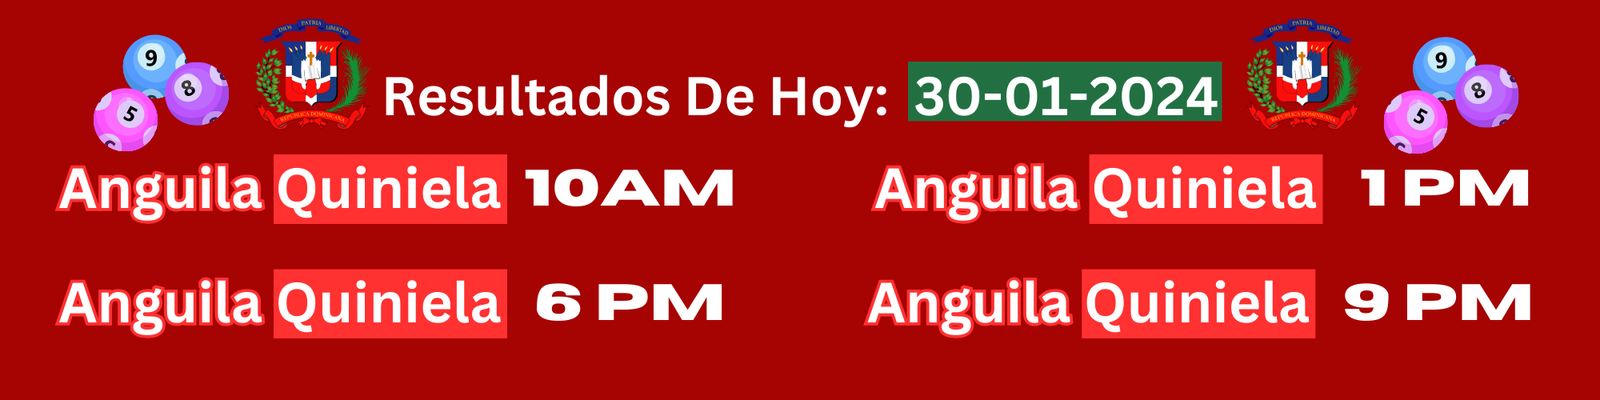 Anguila Quiniela header - 17-01-2024